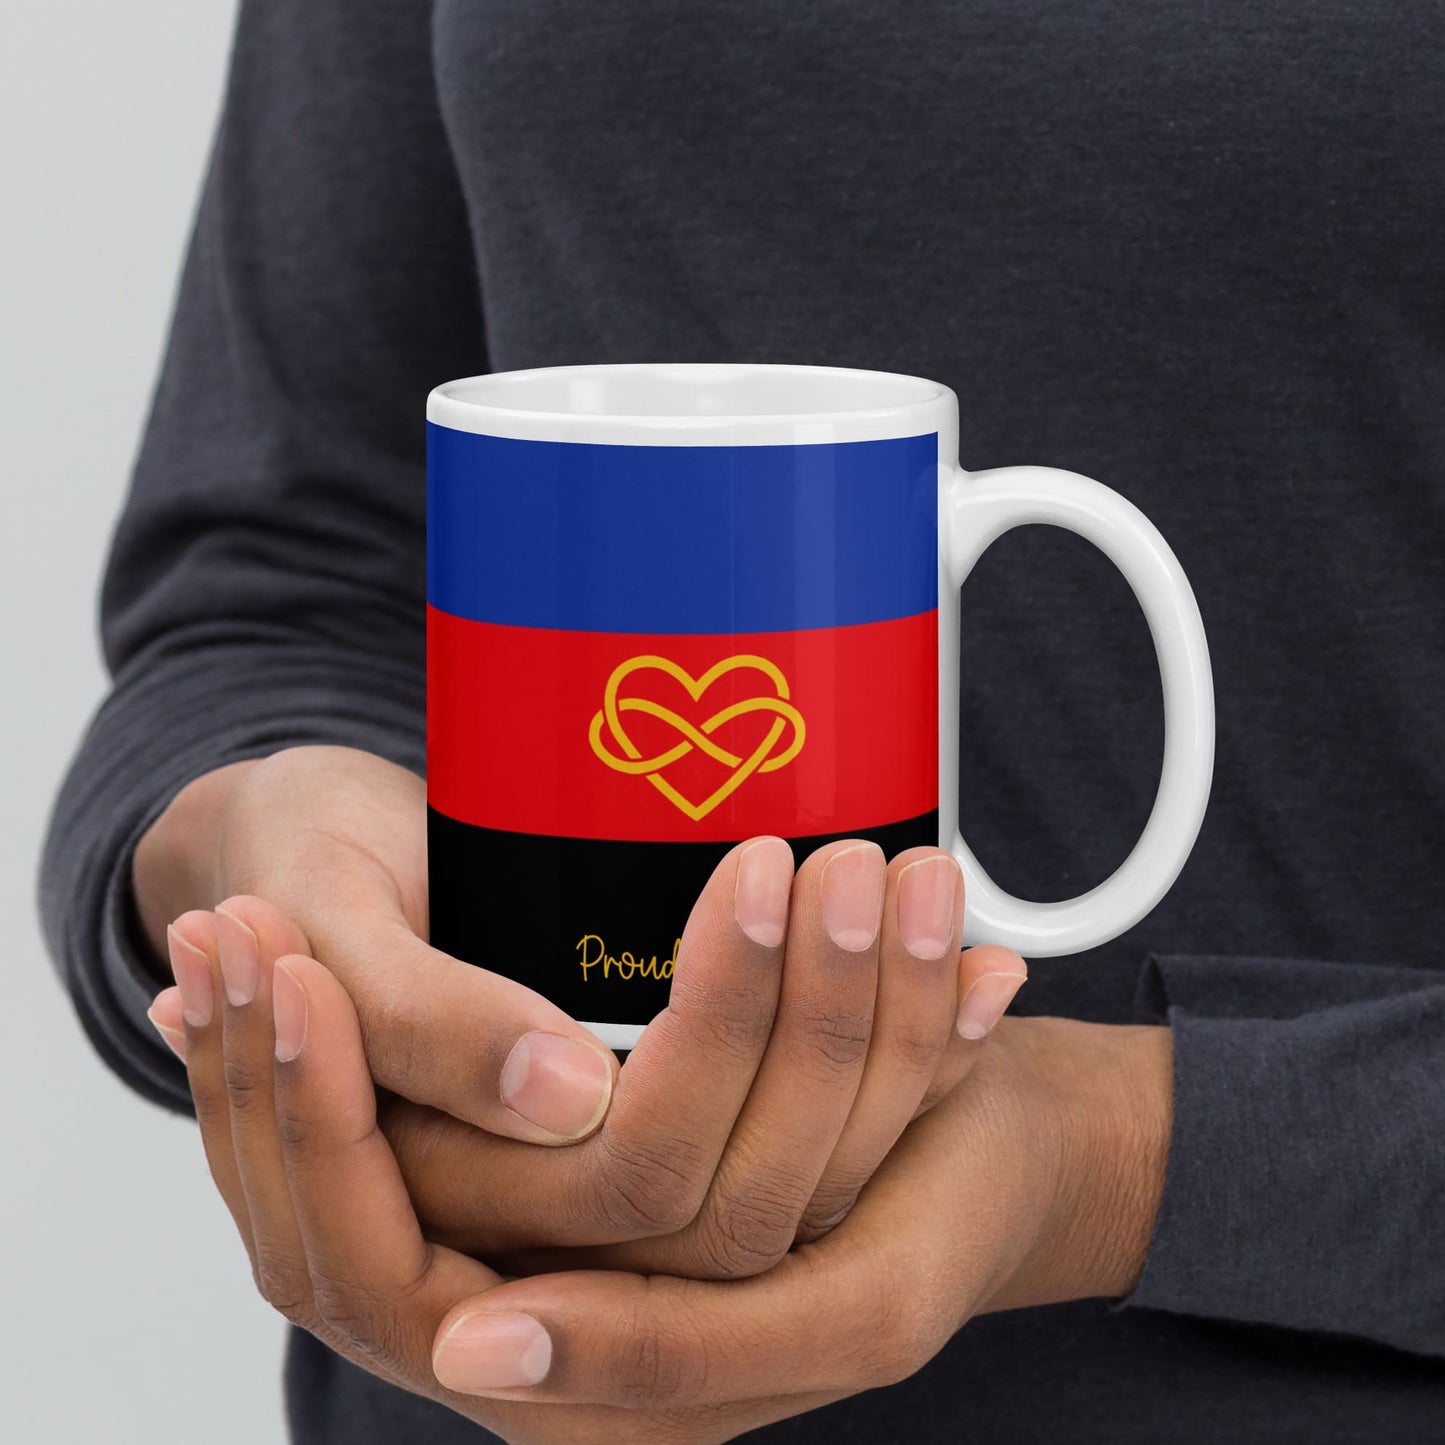 polyamory coffee mug in hands